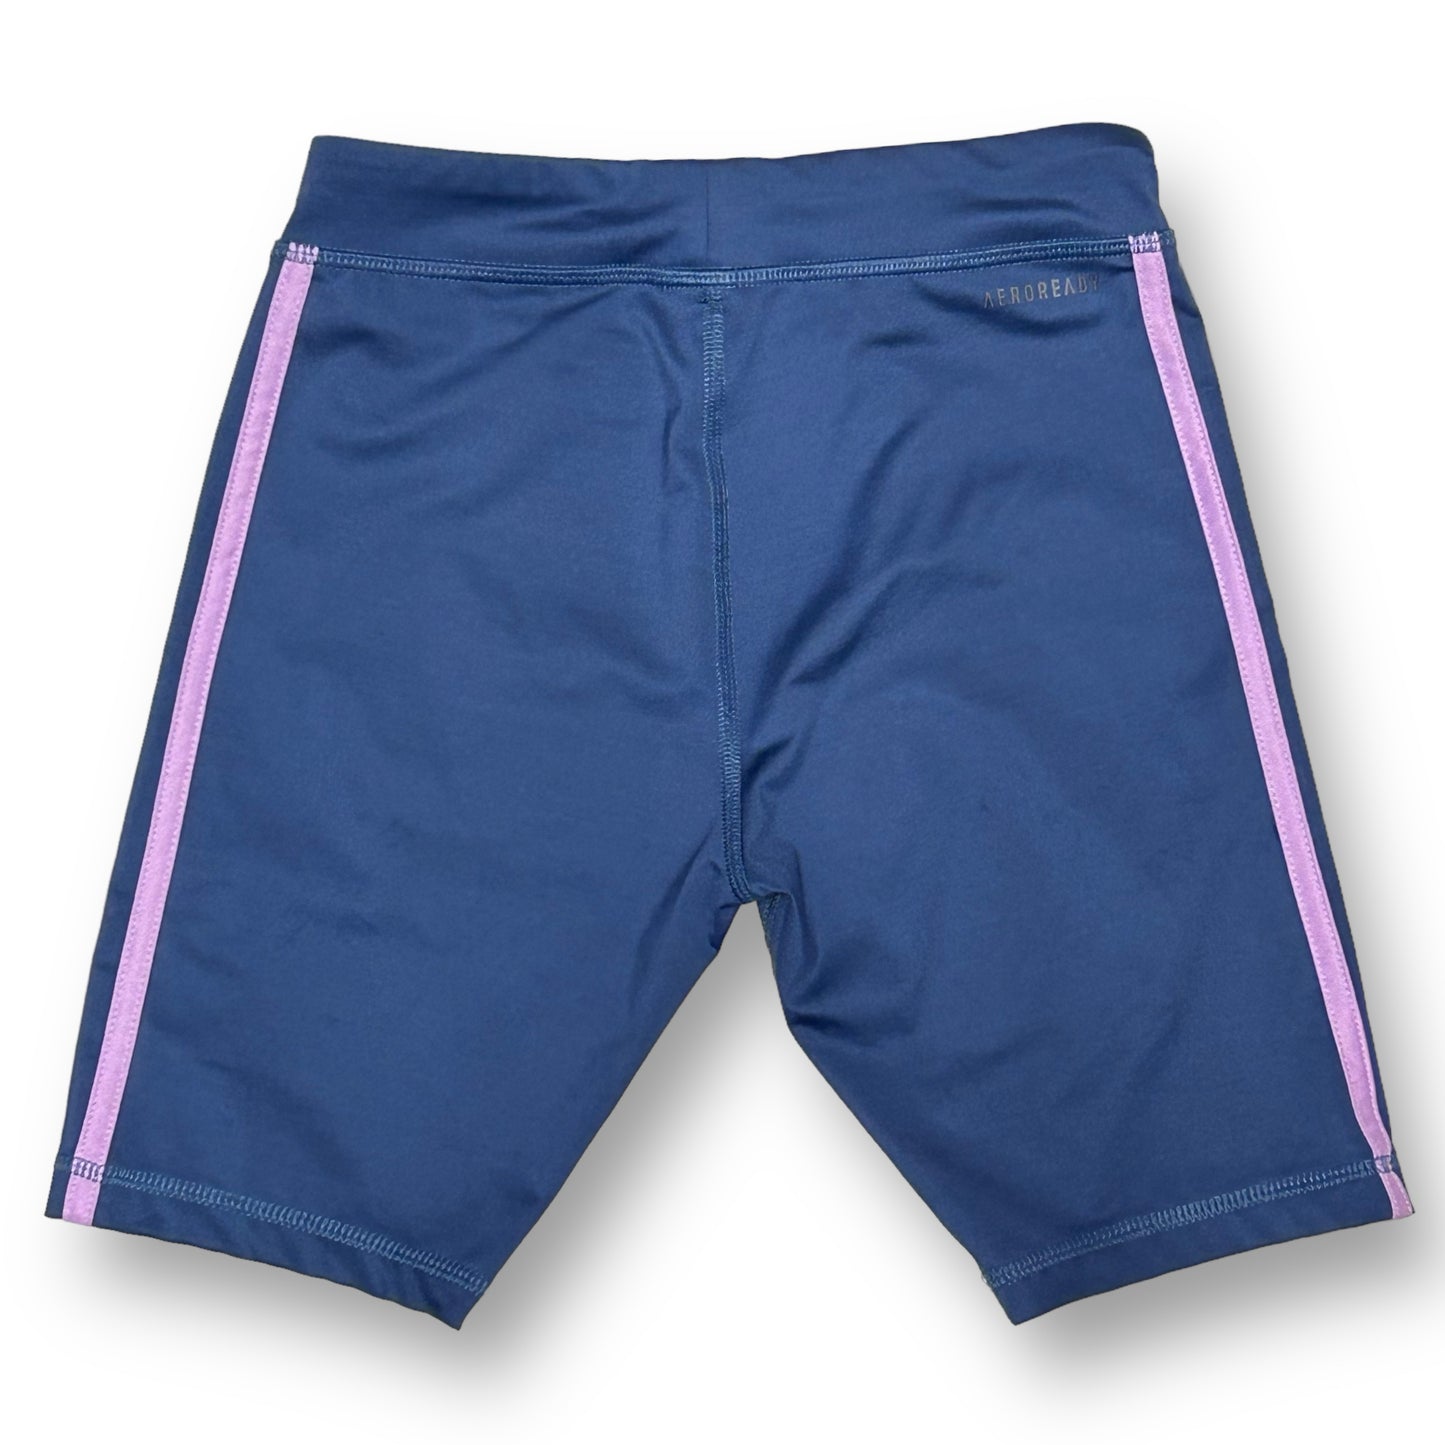 Girls Adidas Size 10/12 Blue Athletic Bike Shorts